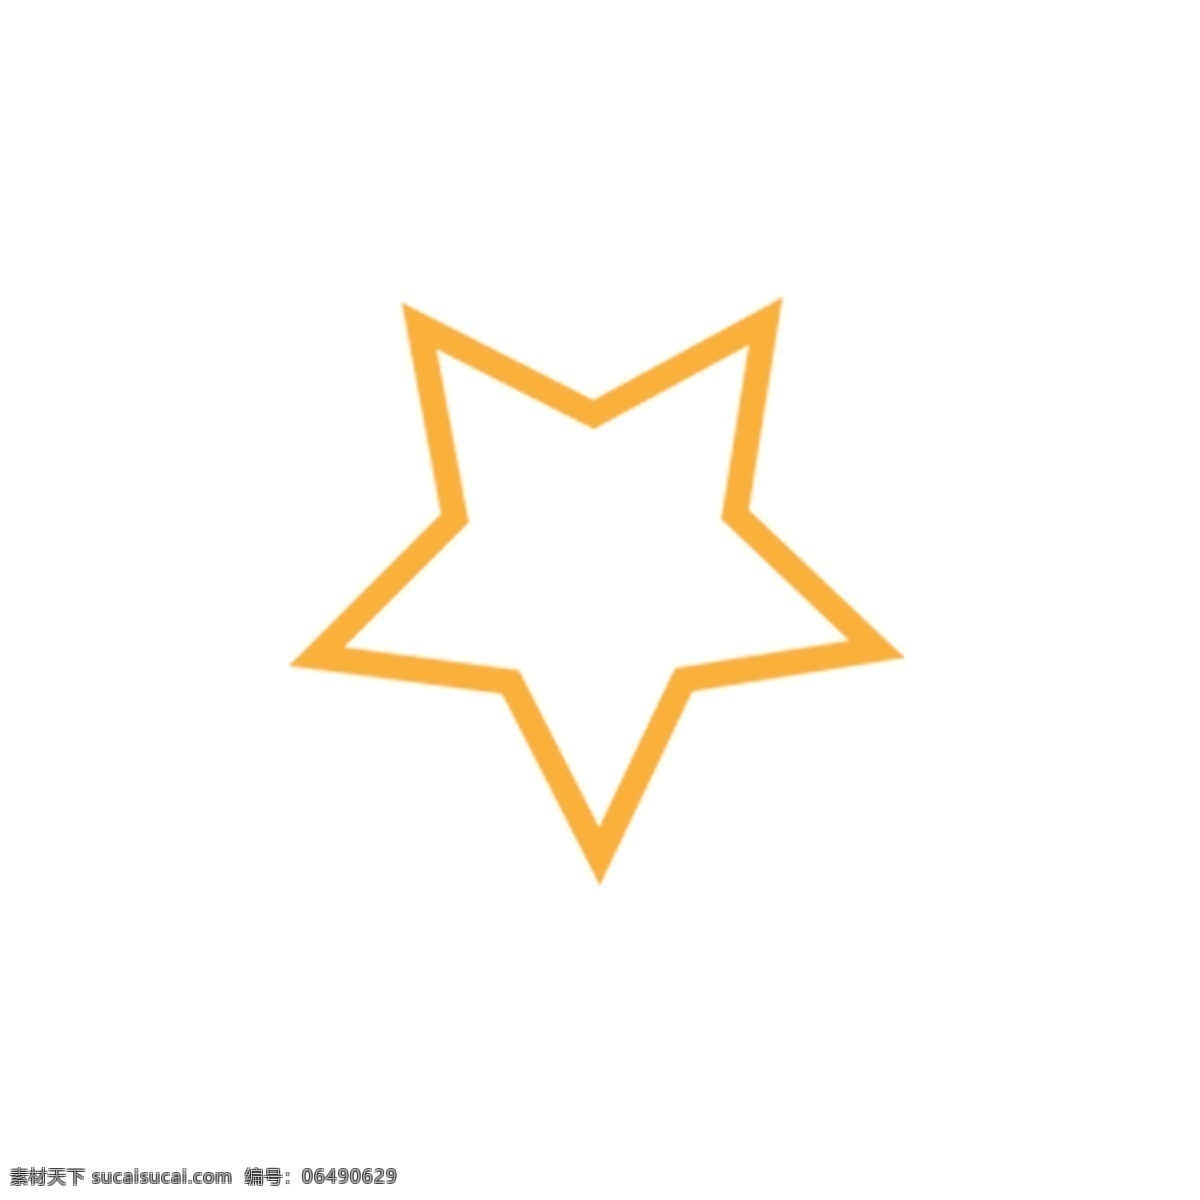 卡通 手绘 金色 五角星 黄色五角星 五角星星 手绘涂鸦 星星 黄色